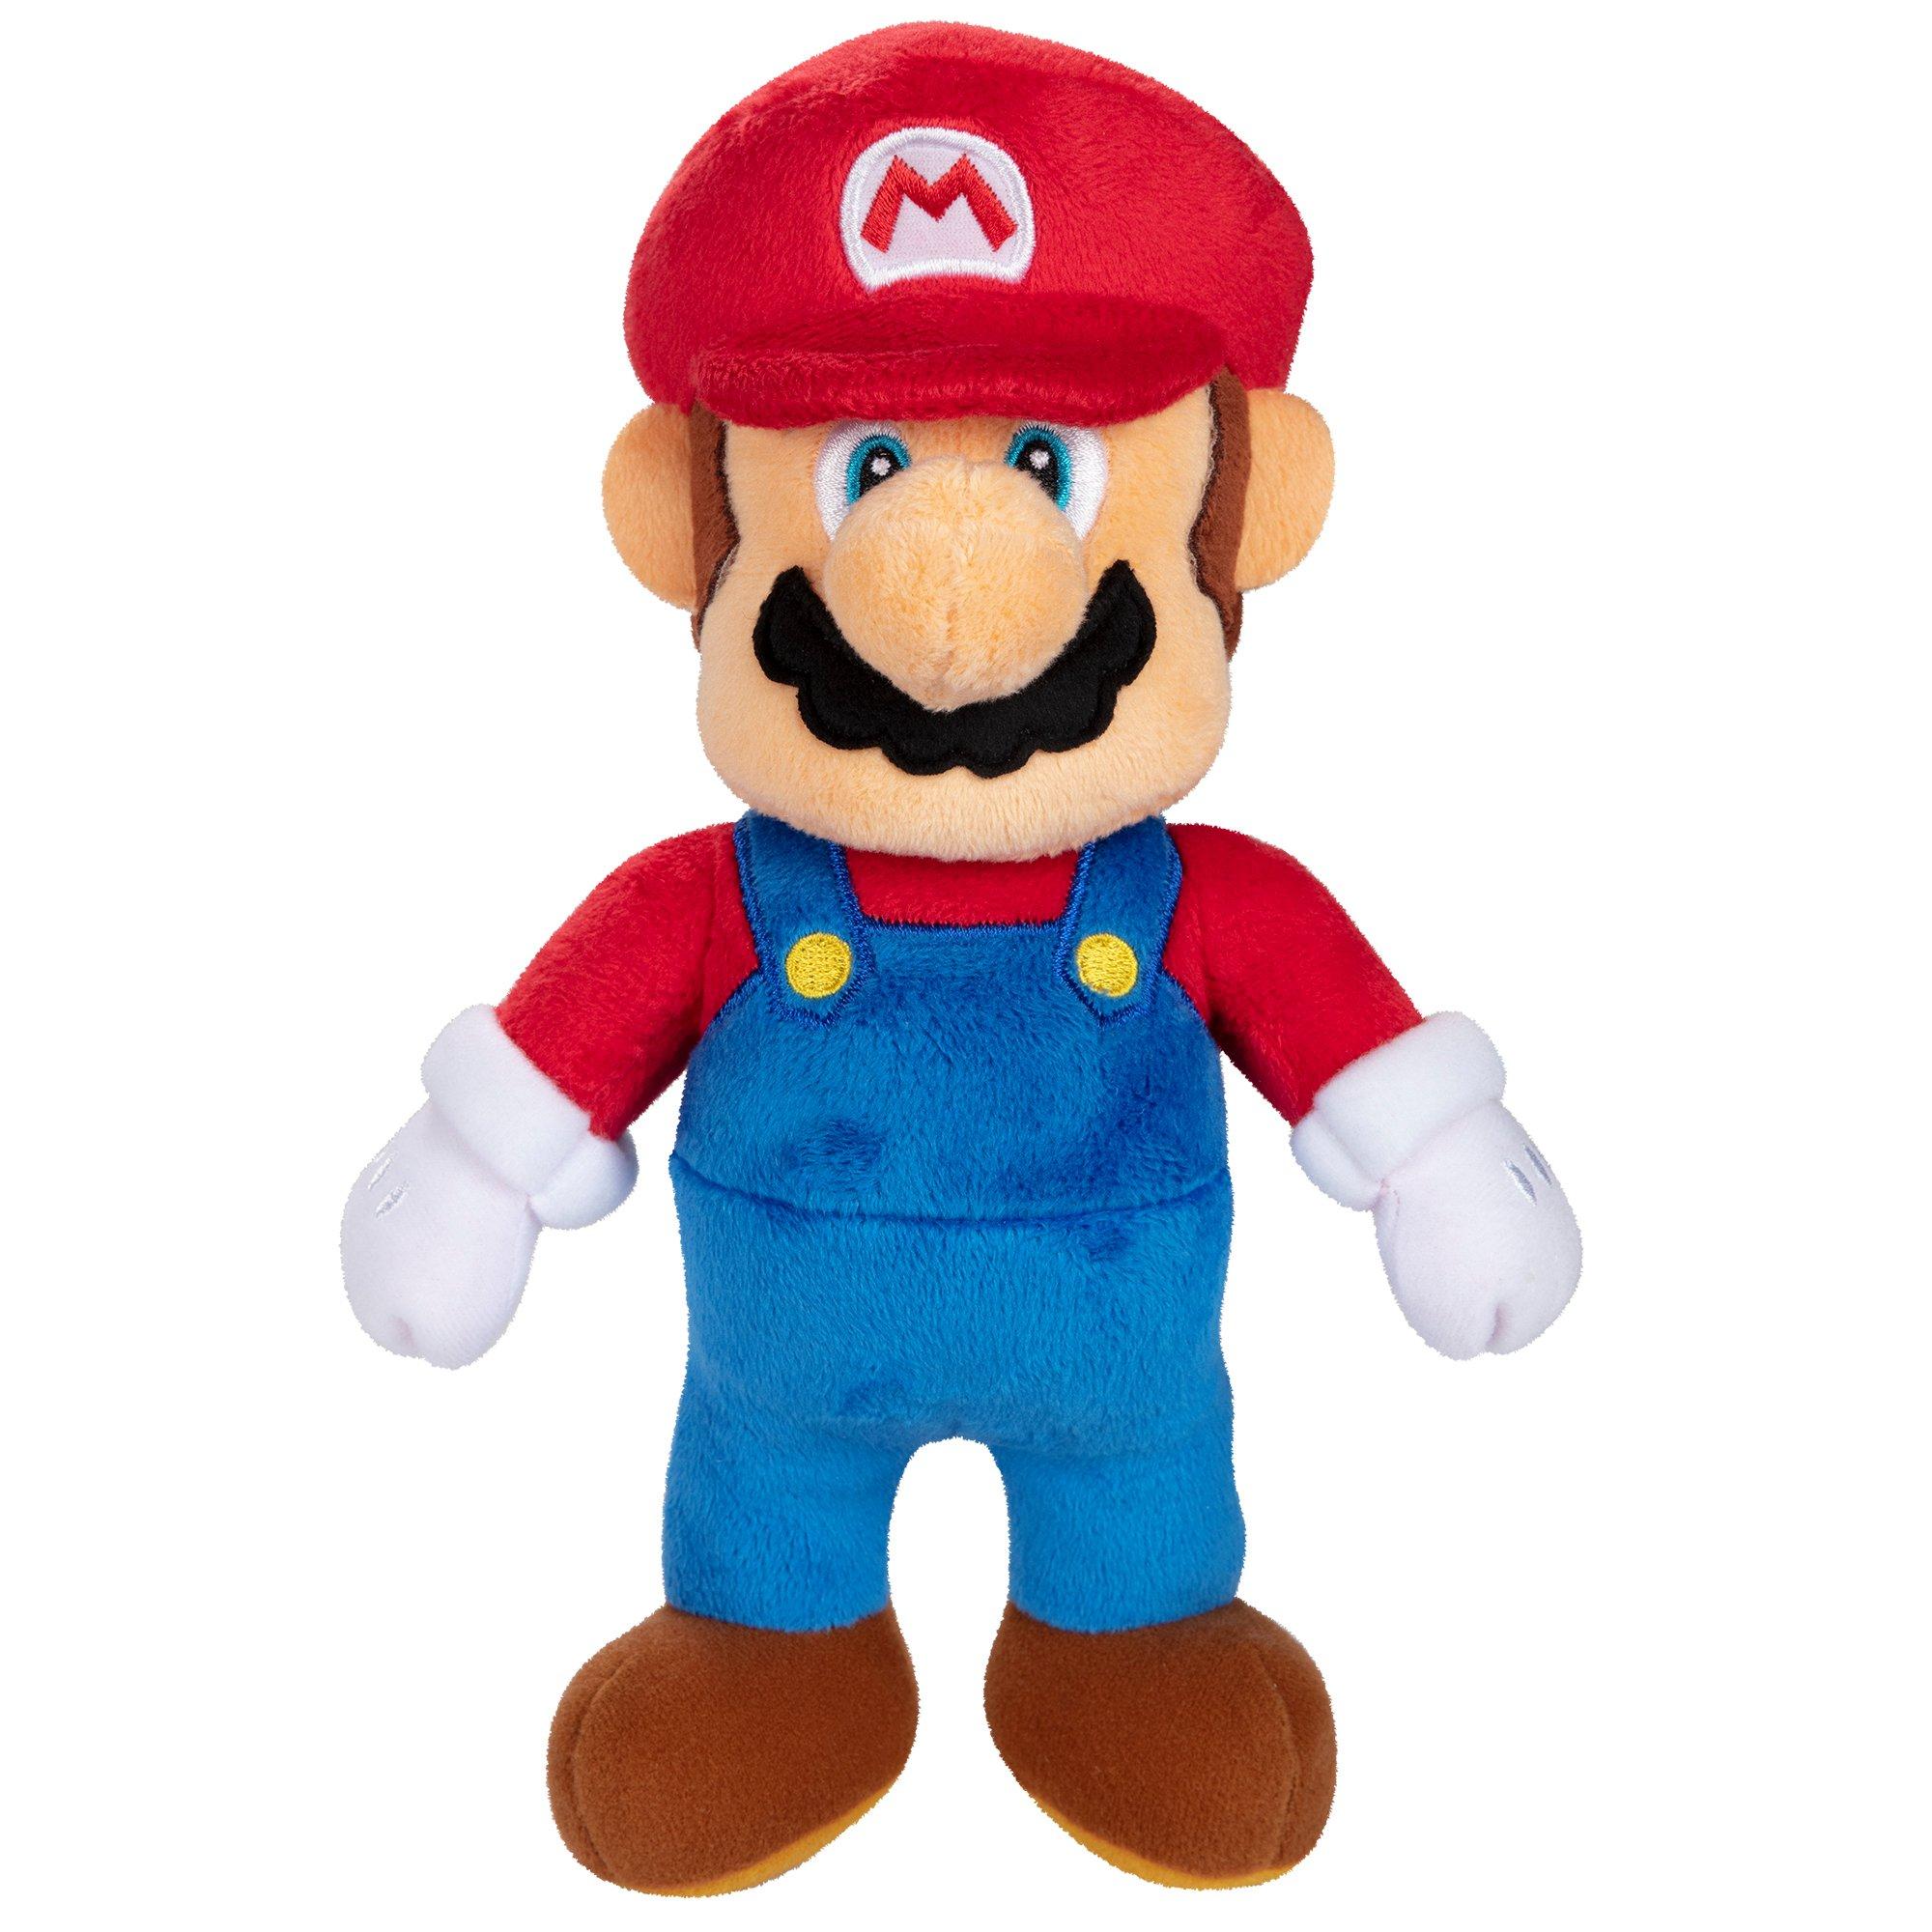 Super Mario 9-in Plush